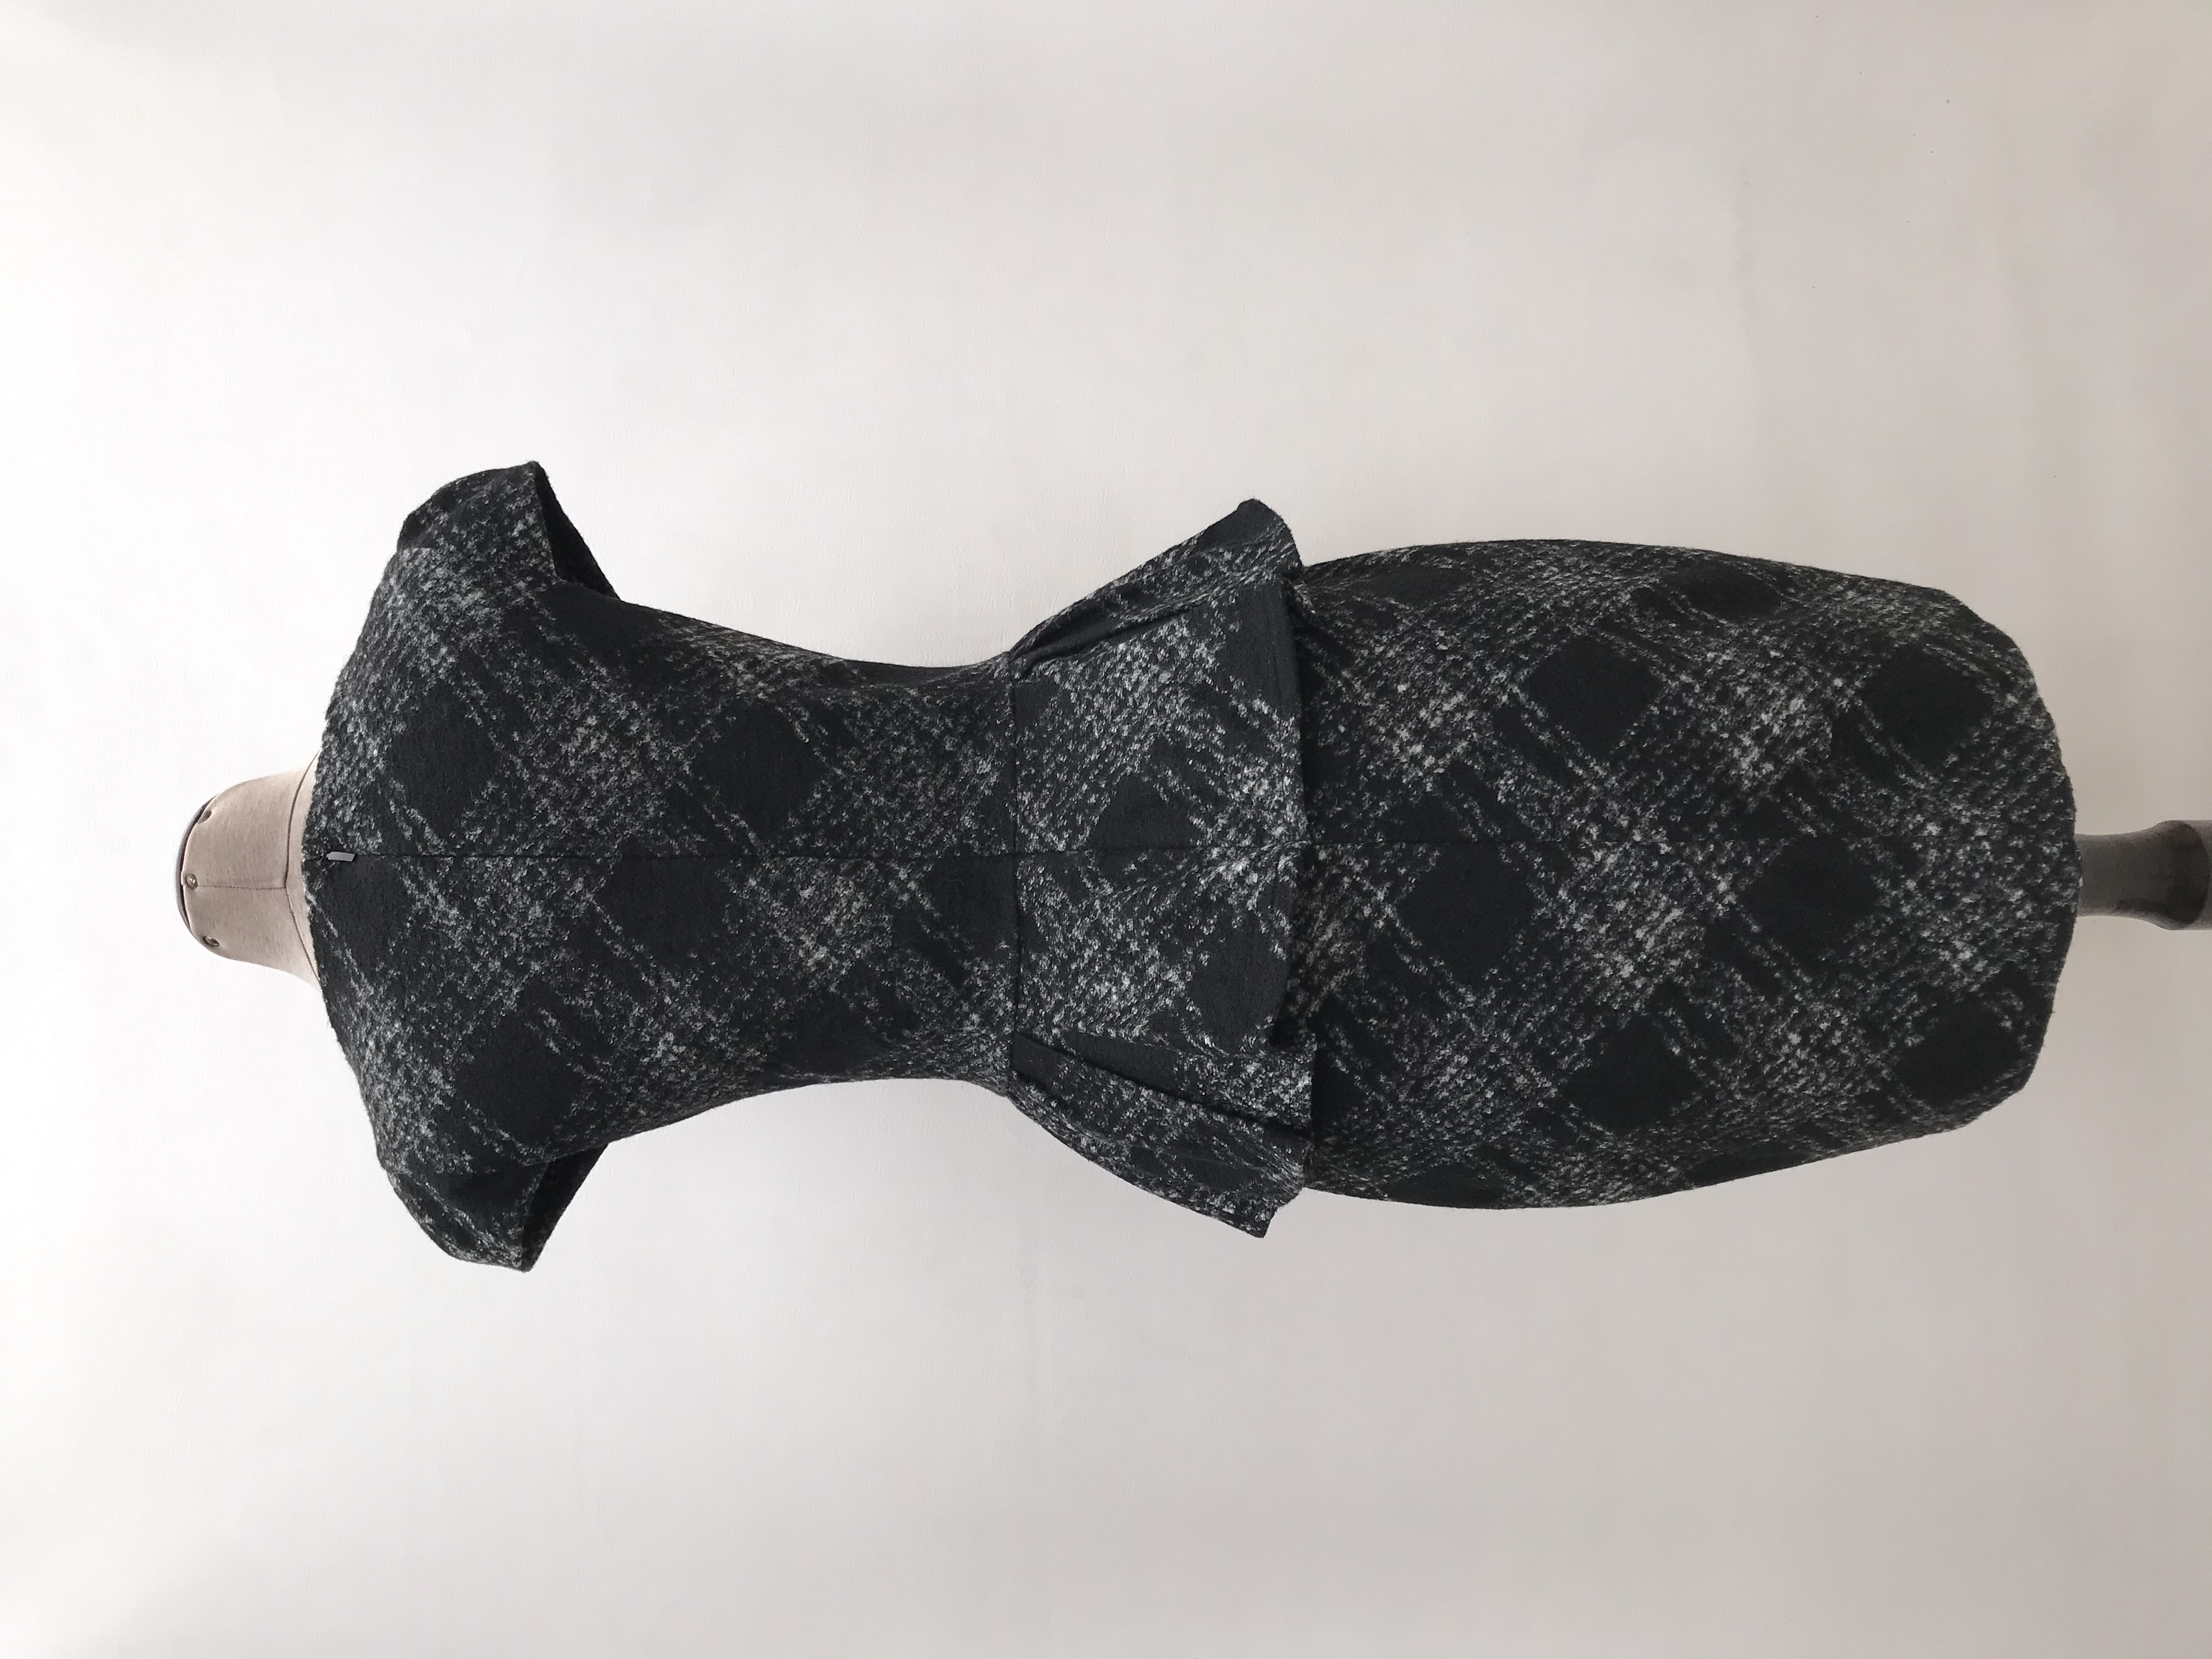 Vestido Mango de lana y acrílico, estampado plomo y negro, forrado, volante en a cintura y cierre posterior. Largo 92cm. Precio original S/ 270